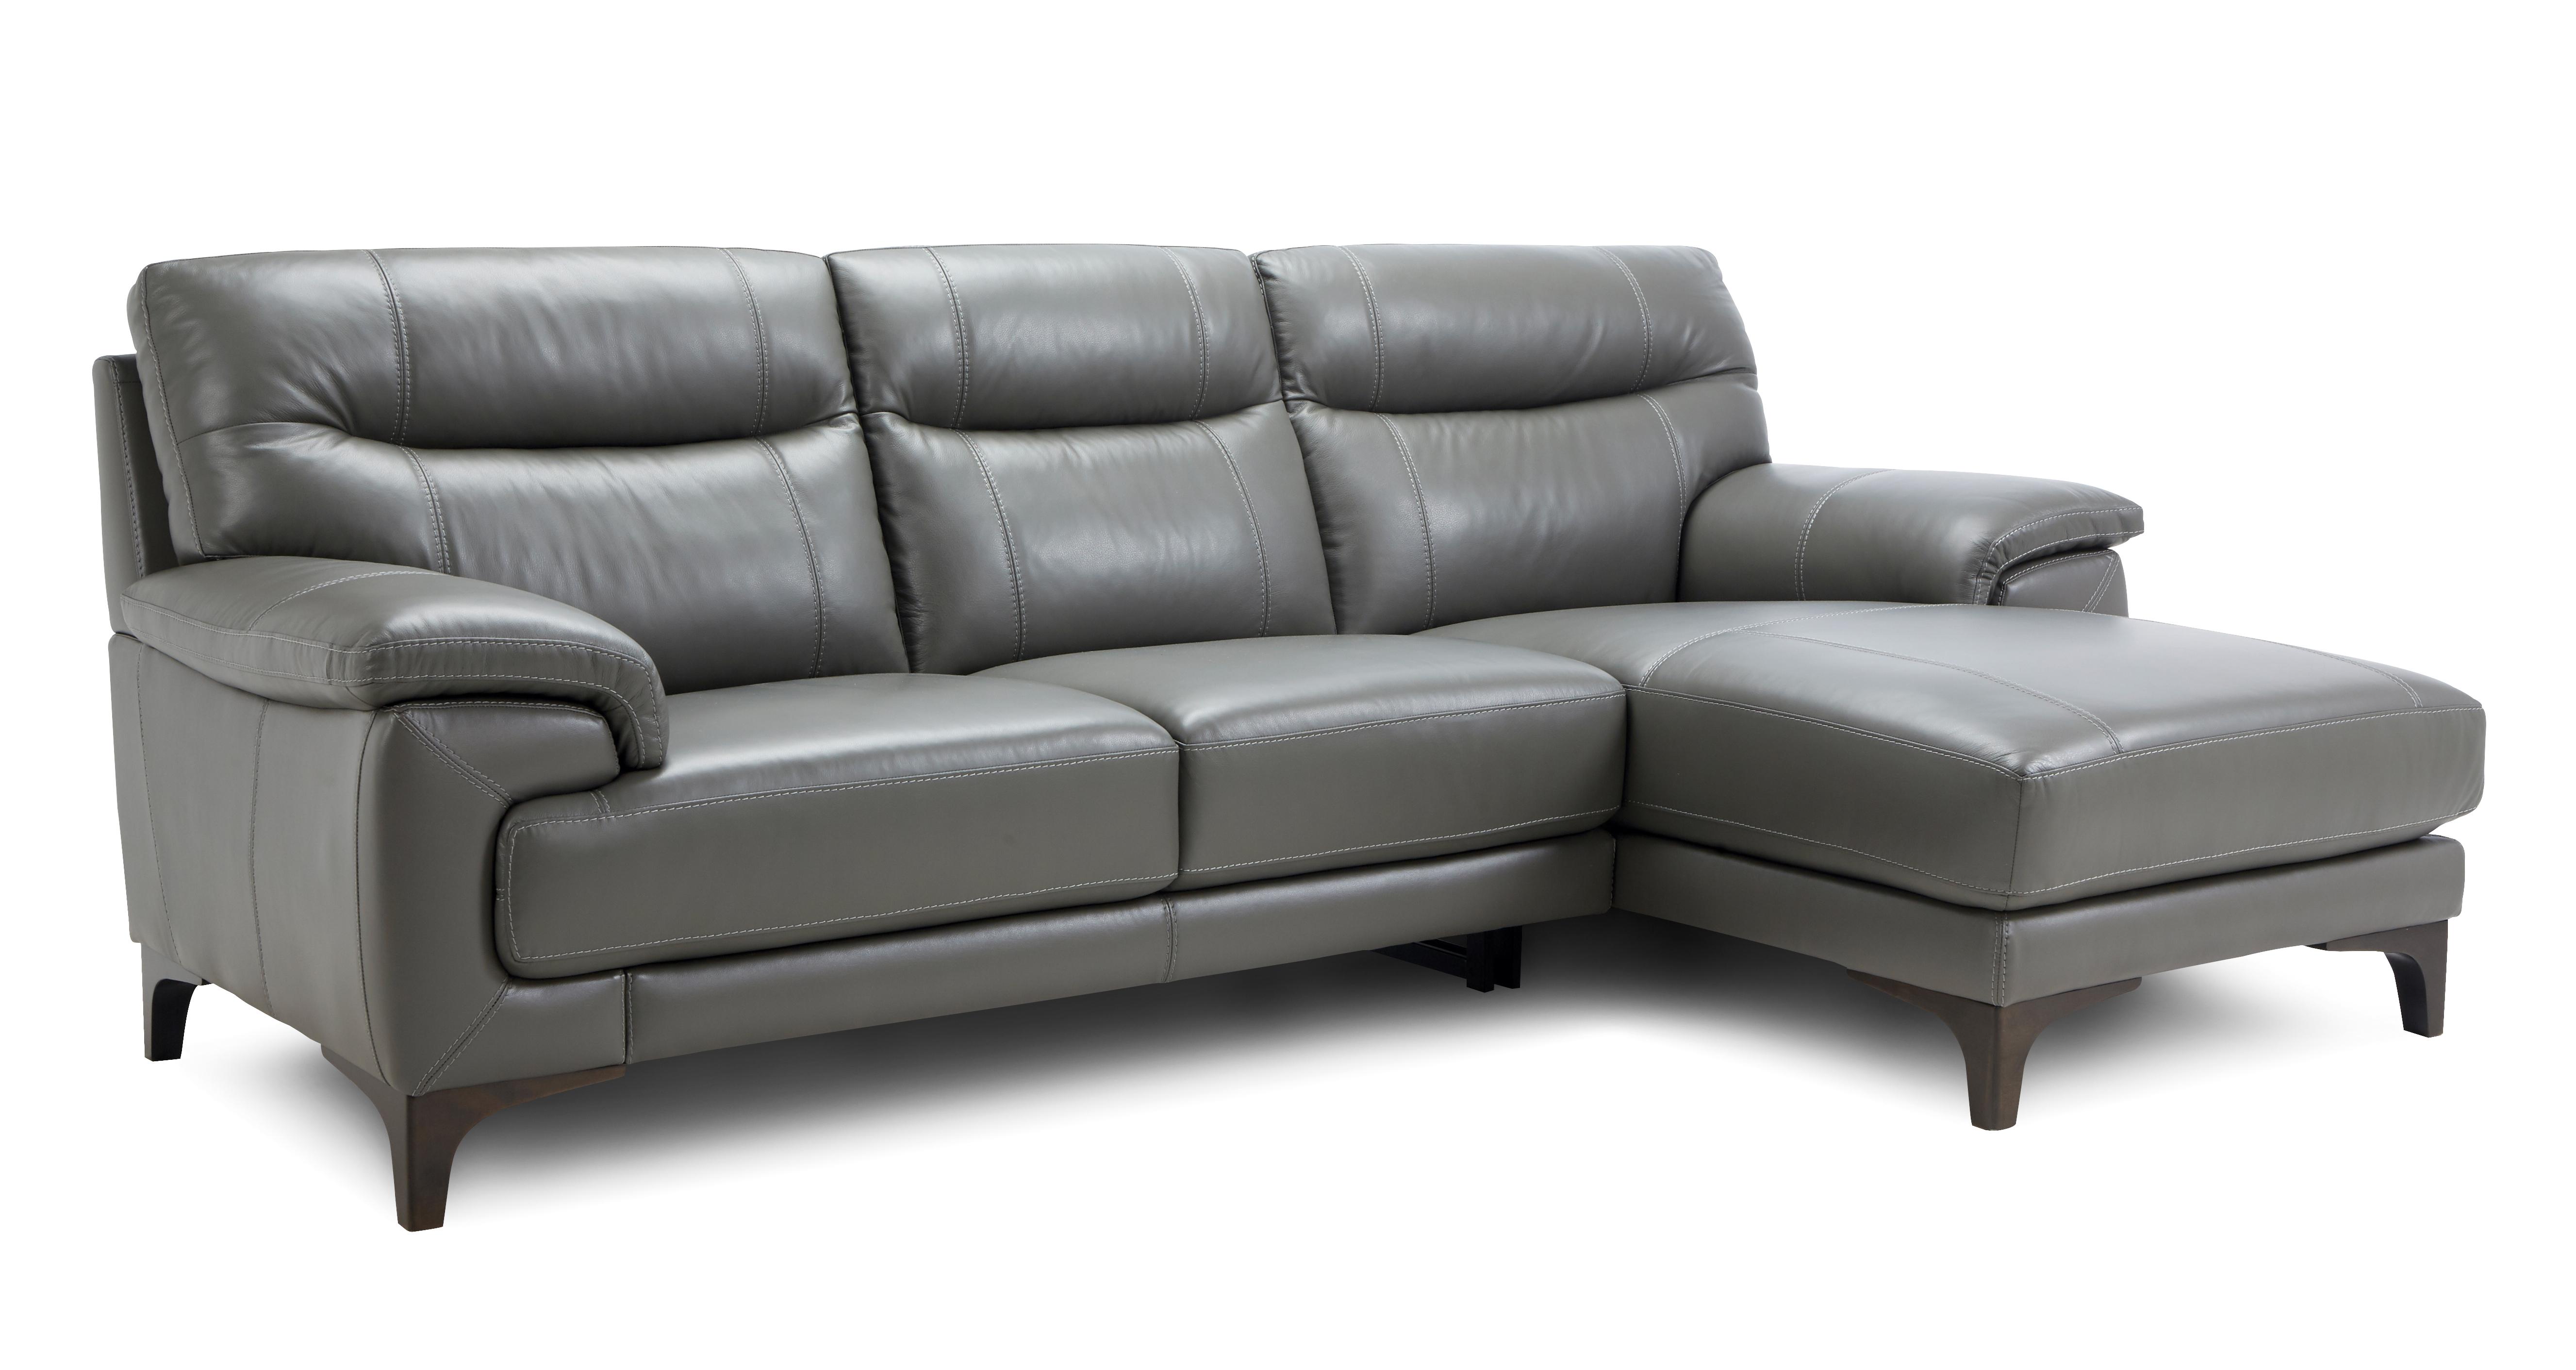 Danbury 3 Seater Sofa